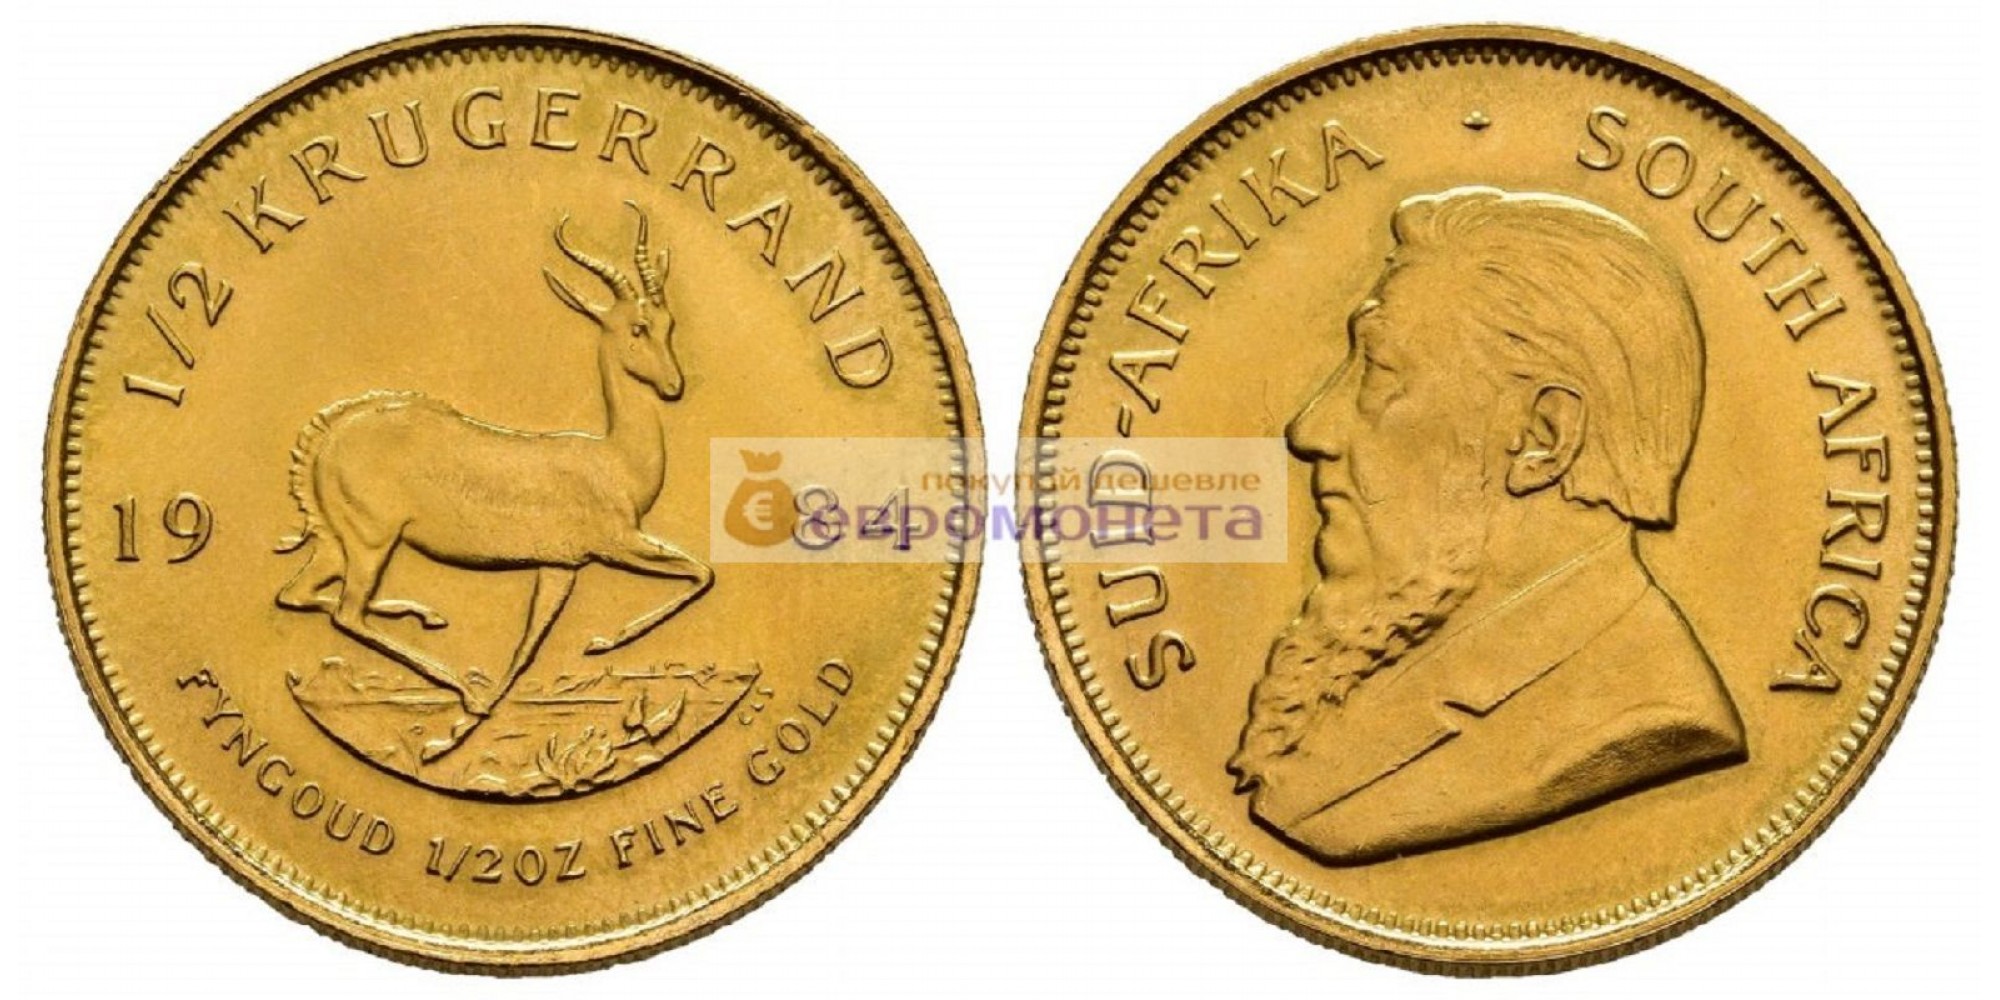 (ЮАР) Южно-Африканская Республика ½ крюгерранда 1984 год. Чистого драгметалла 15.5 грамм. Золото